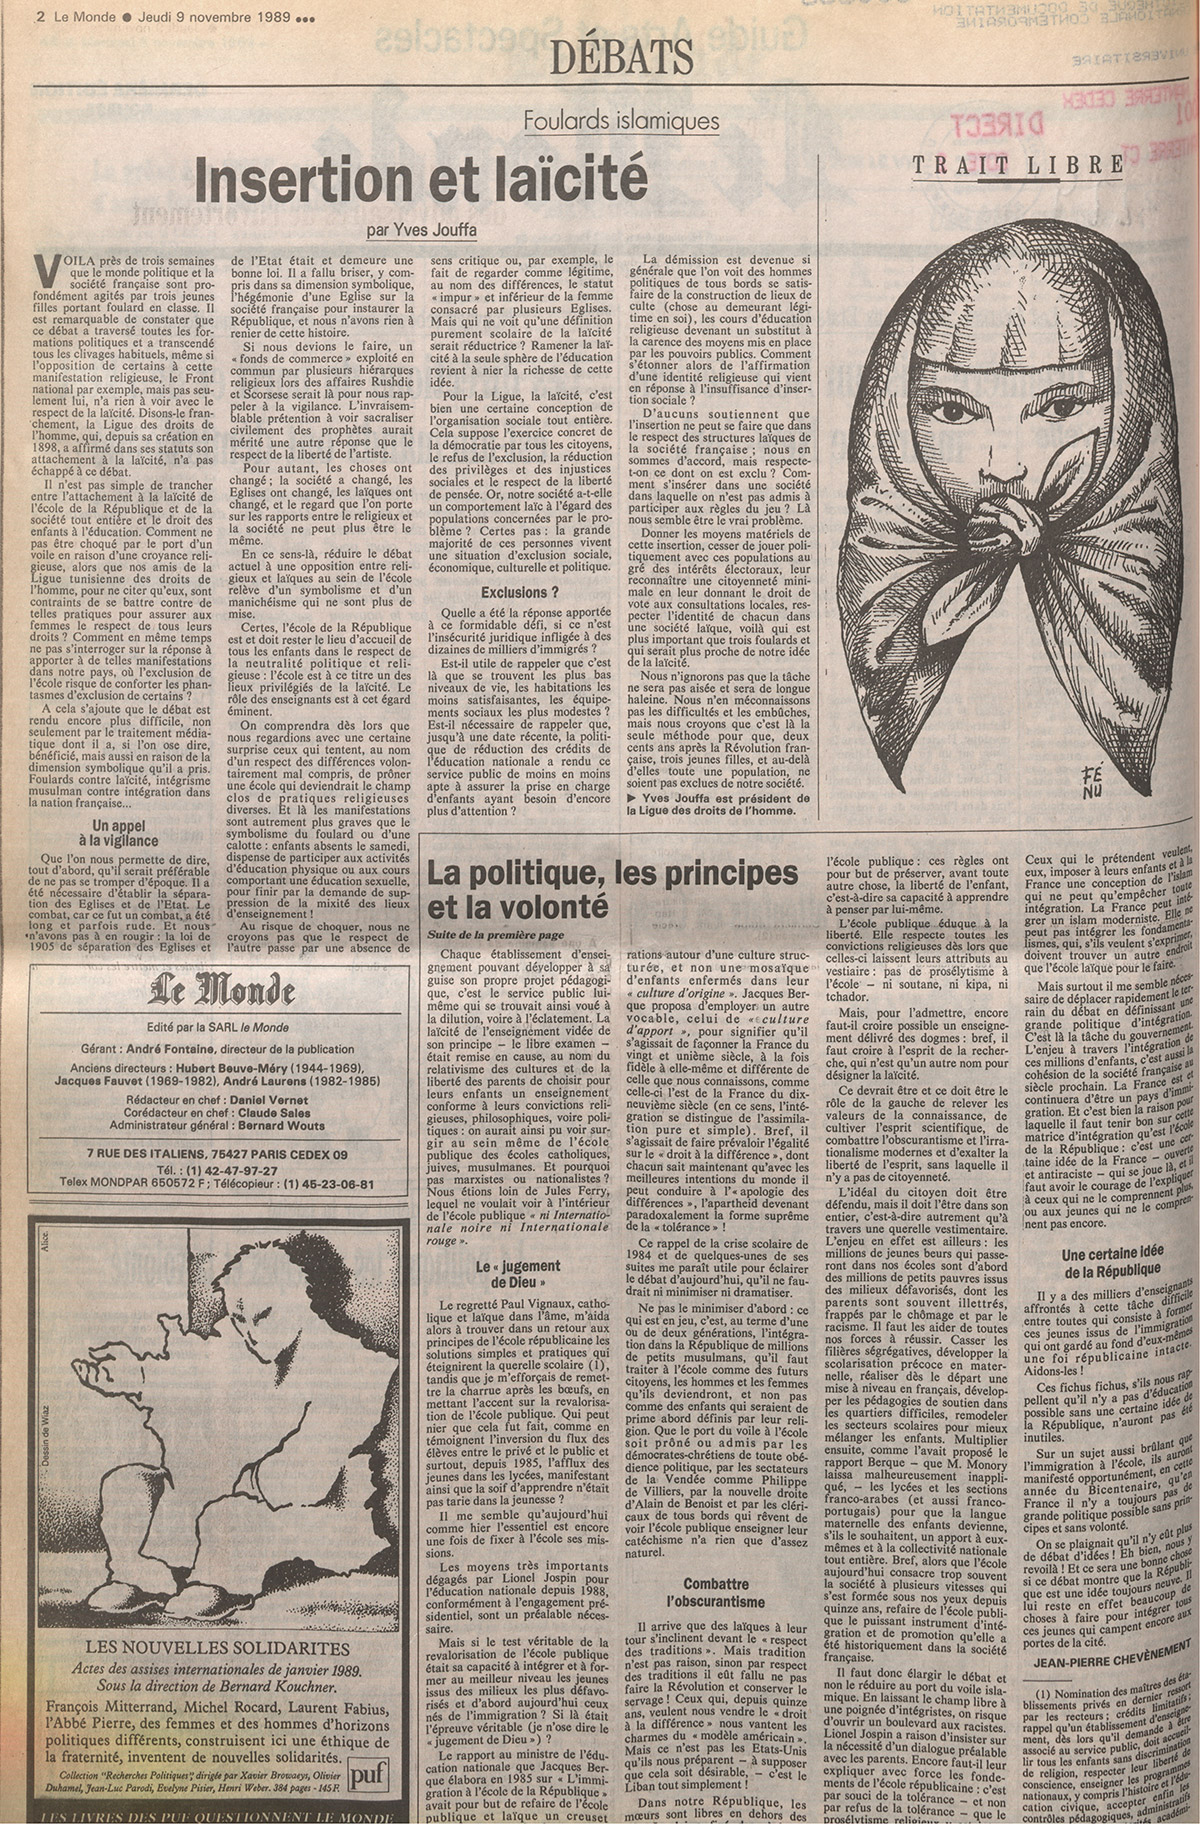 Insertion et laïcité in Le Monde, 9 novembre 1989